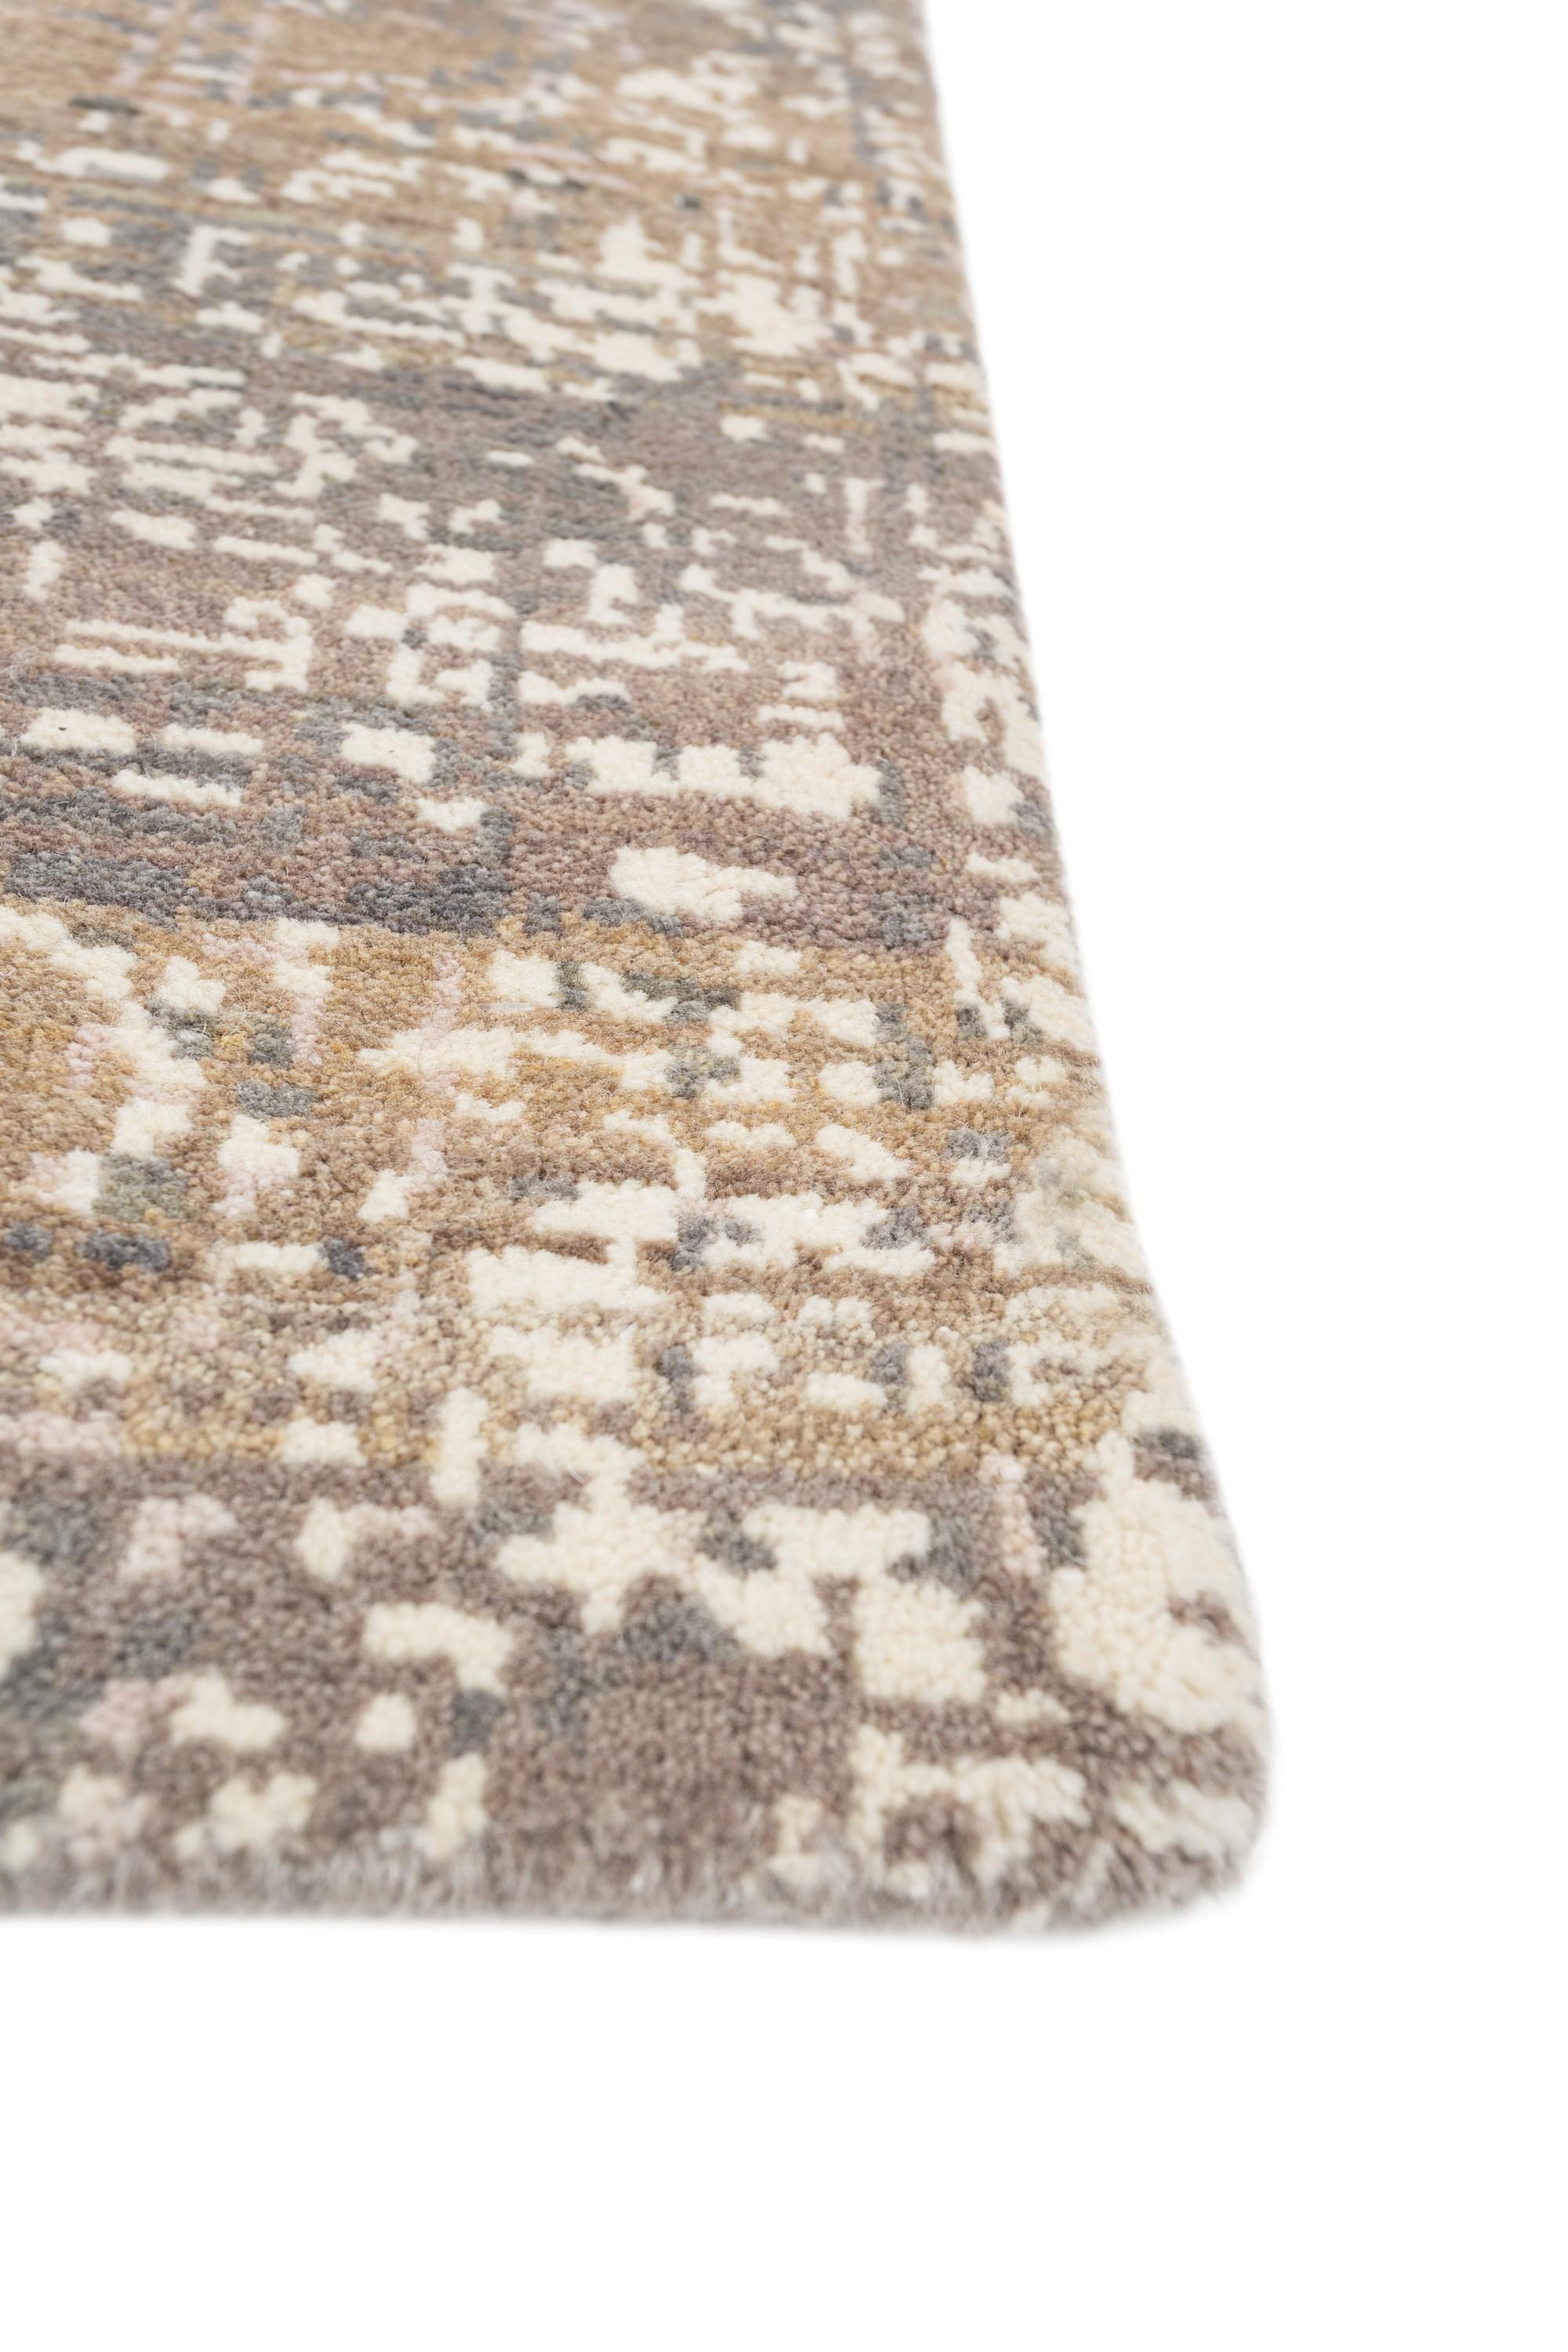 Embarquez pour un voyage de raffinement tactile avec ce superbe tapis en laine de notre collection Uvenuti. Le point fort de ce tapis est son motif granuleux caractéristique, qui rappelle les complexités de la vie qui, une fois tissées ensemble,